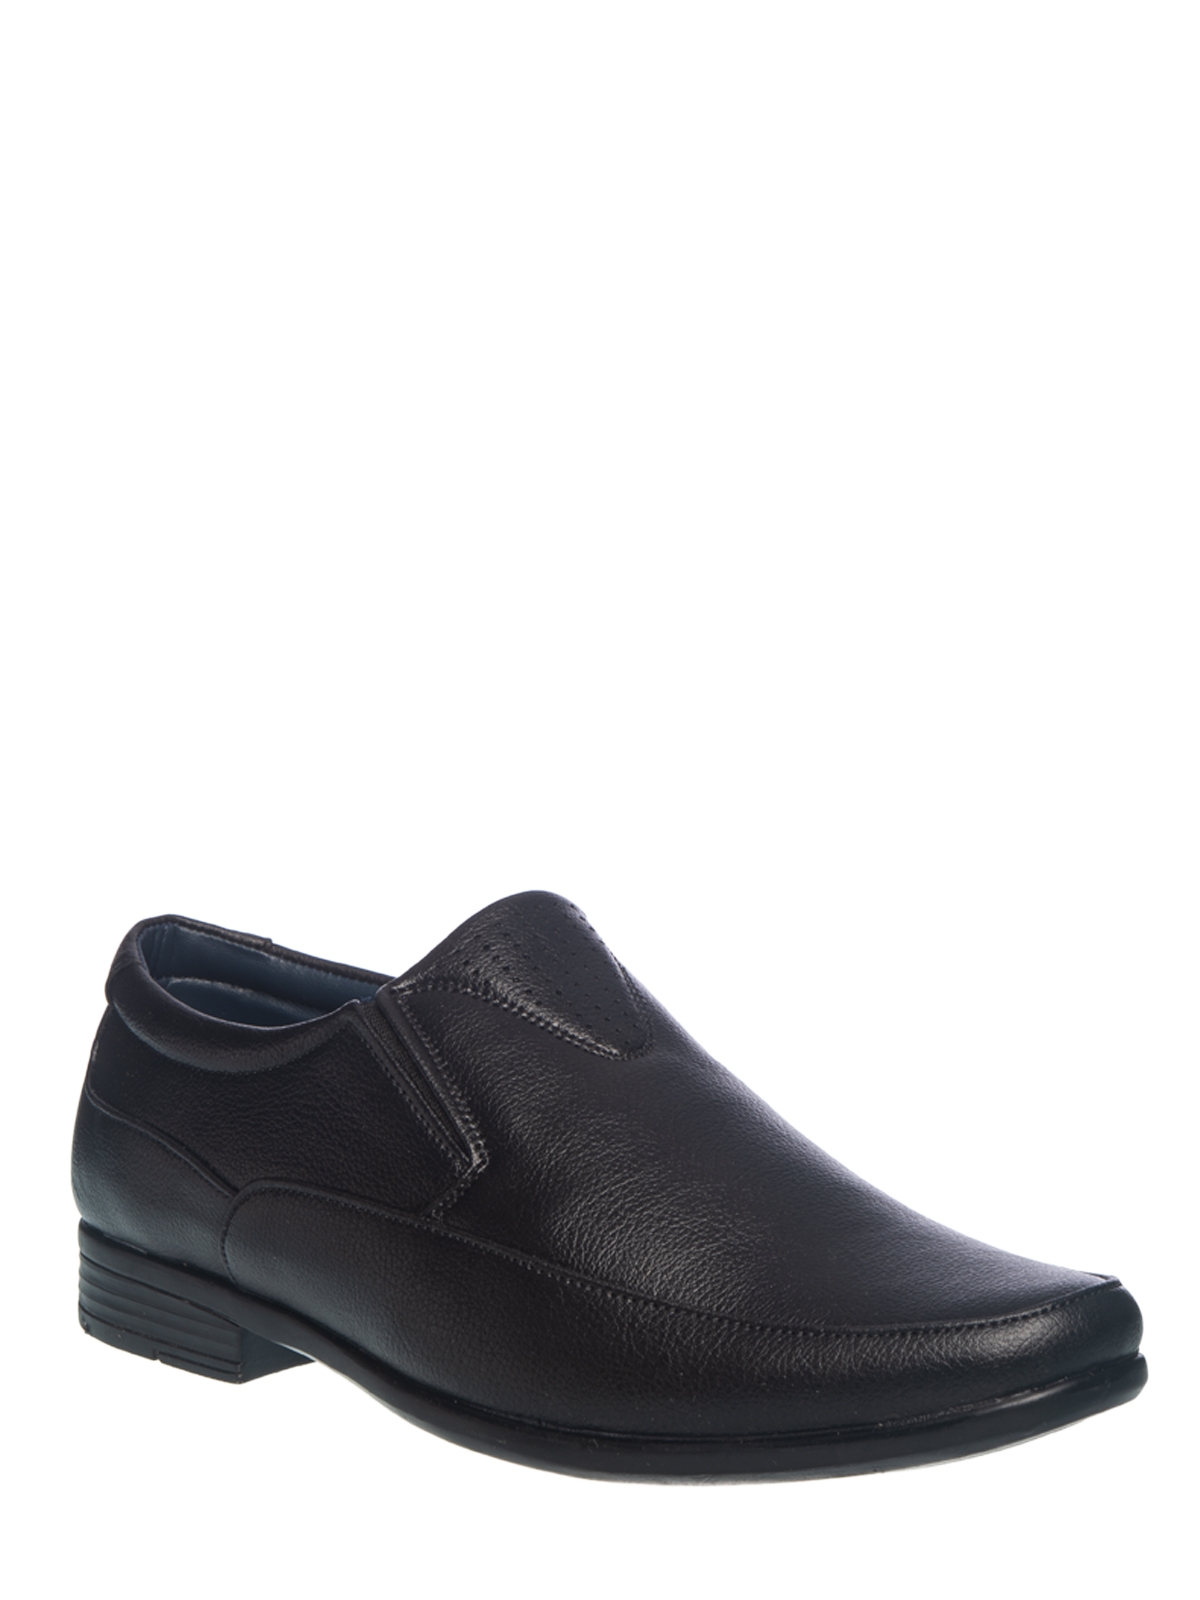 Khadim | Khadim Black Slip On Formal Shoe for Men